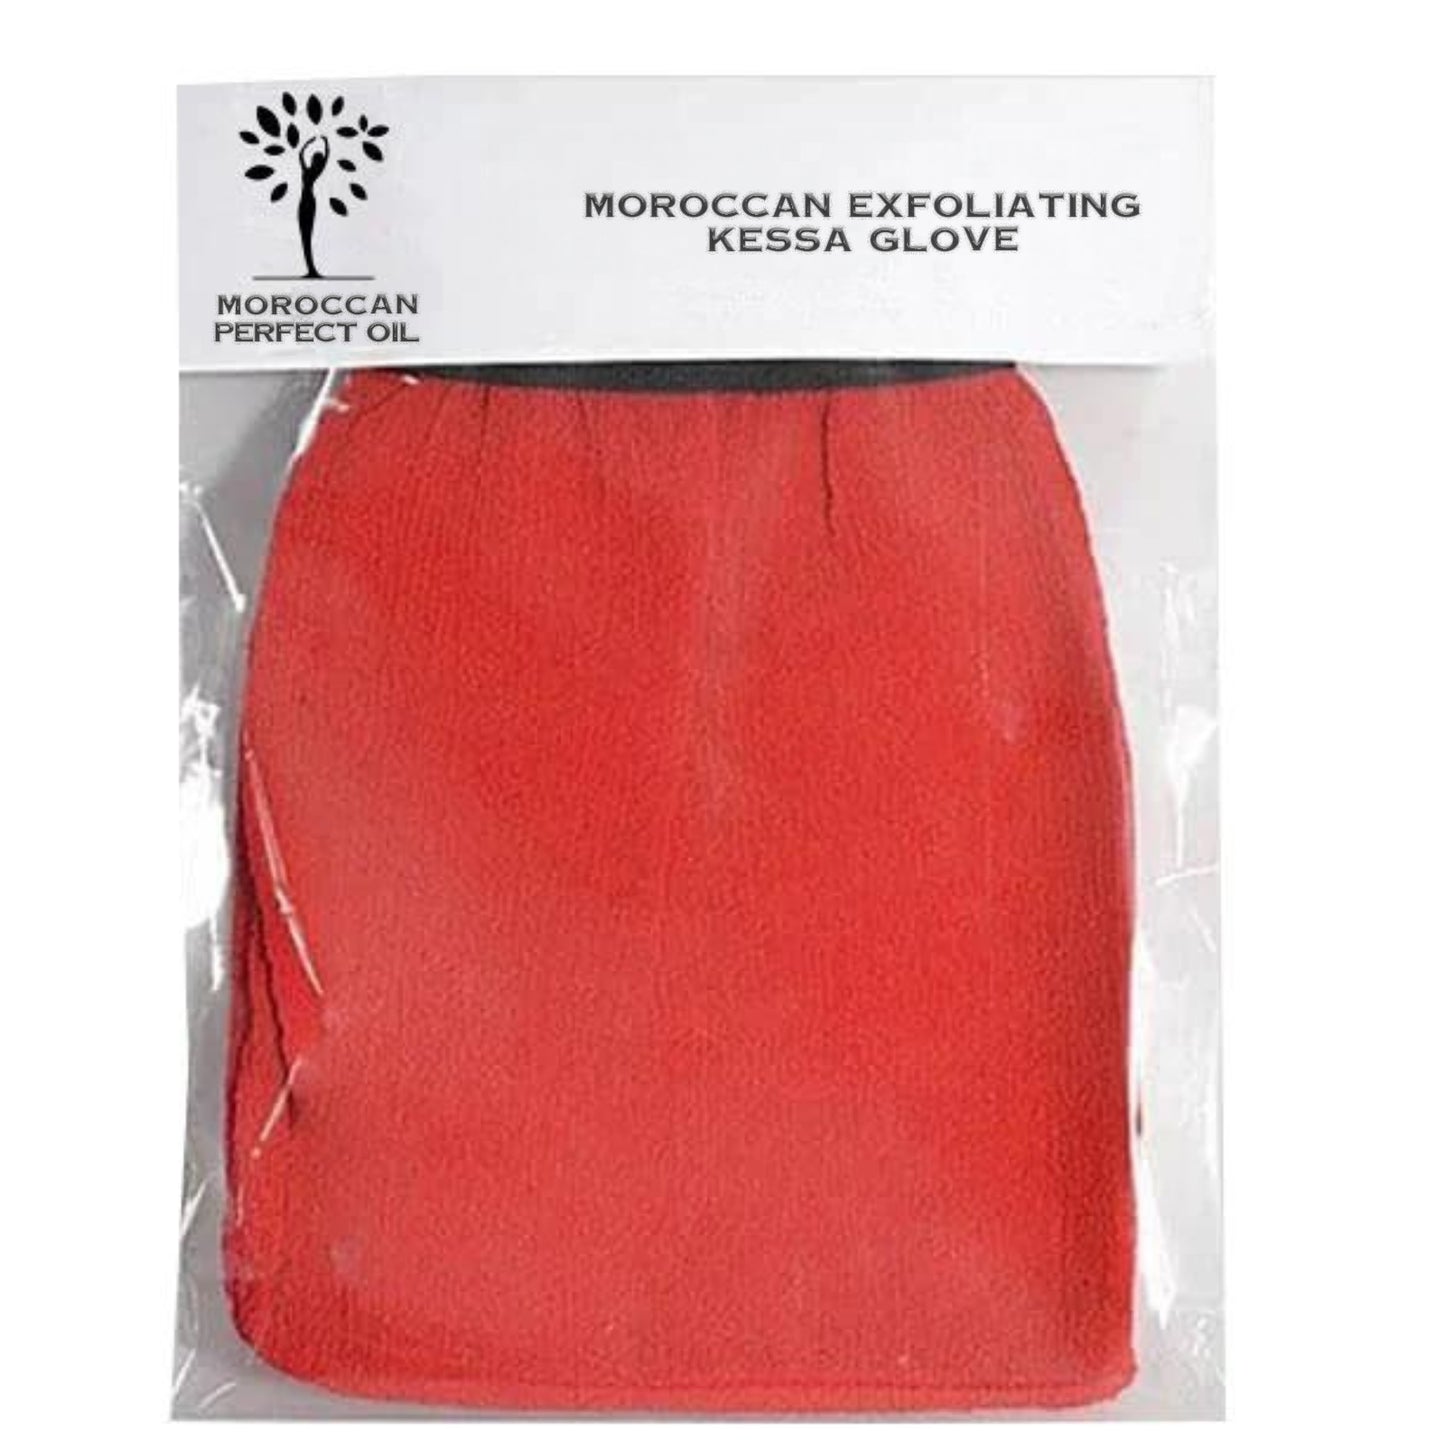 Moroccan Kessa Glove: Exfoliate, Refresh, and Revitalize